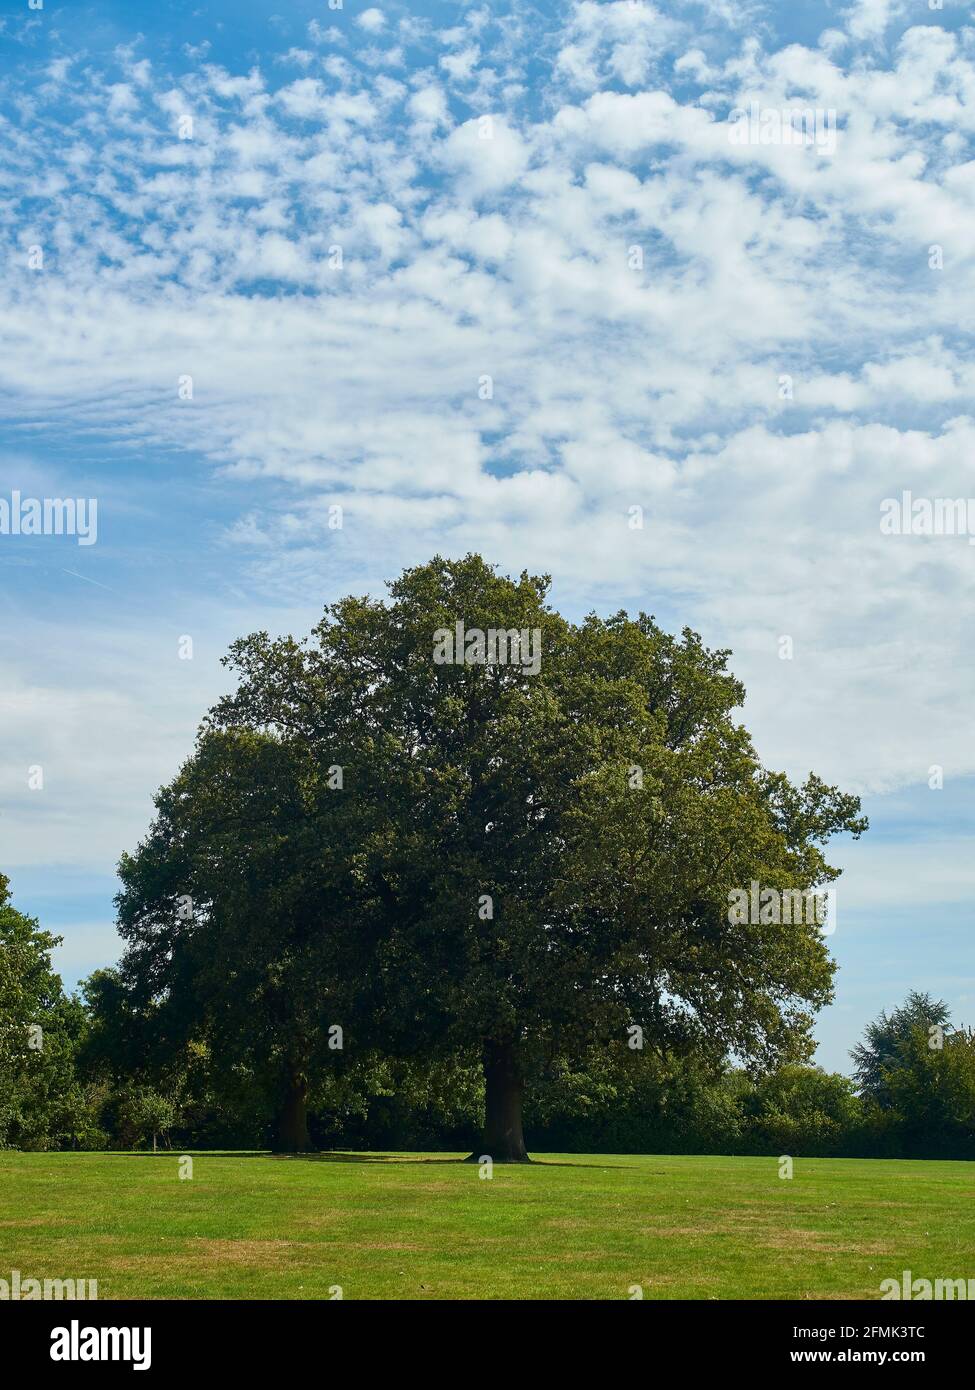 Ein starker, hoher, reifer Baum in einem grünen Feld vor einem blauen Sommerhimmel mit einem Gewirrter von Wolken; eine ländlich wirkende Szene am Rande Londons. Stockfoto